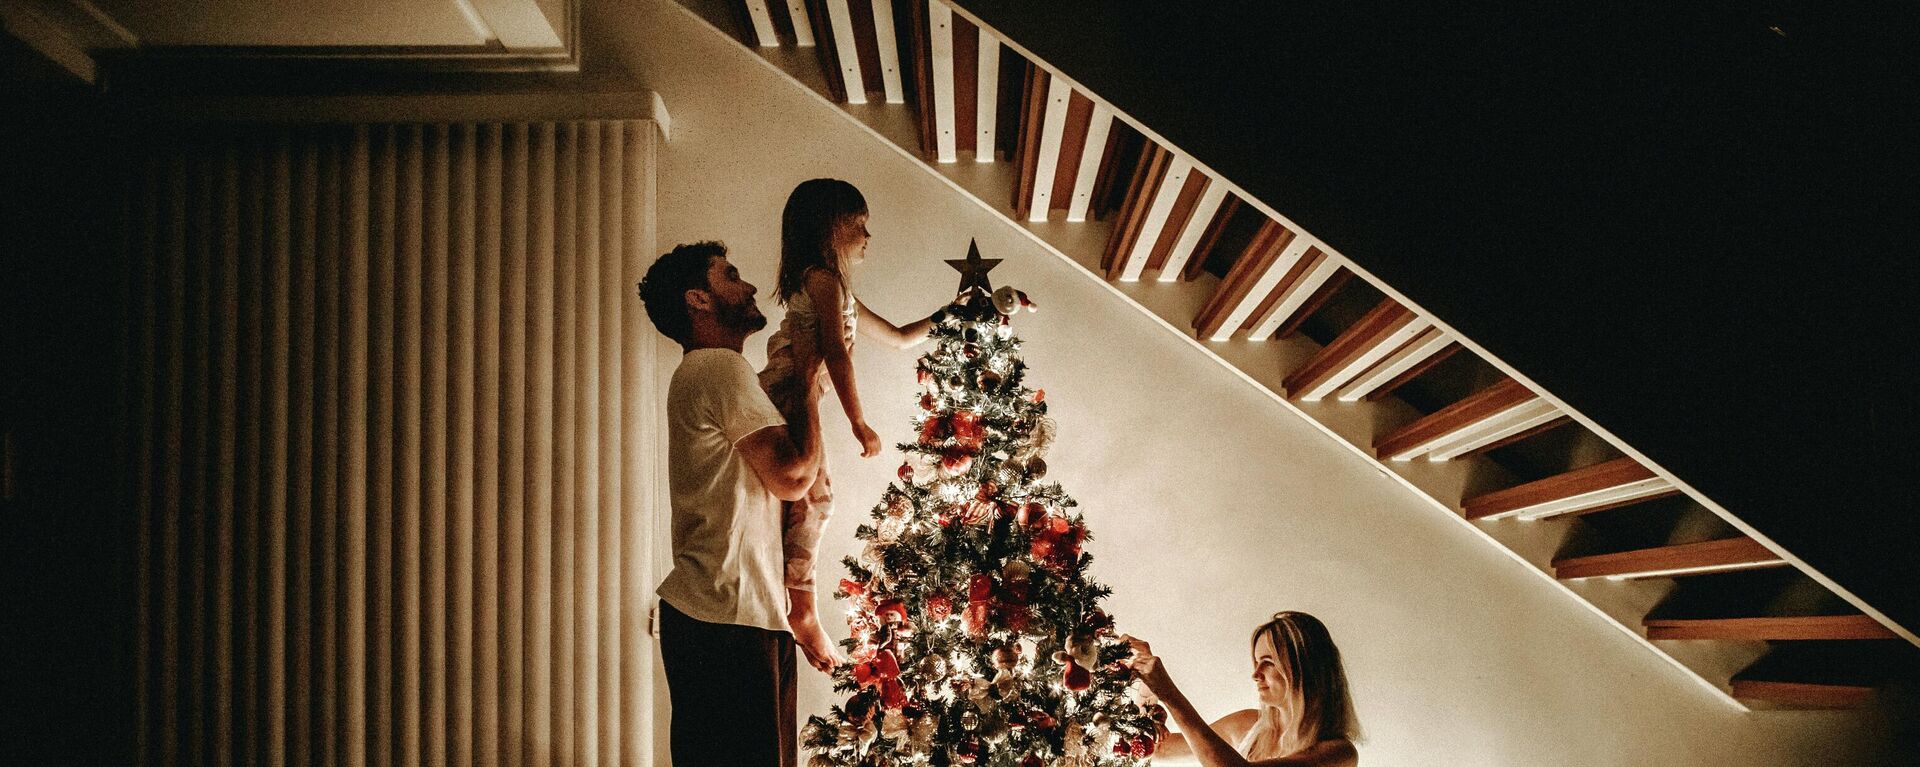 Un familia alrededor de un árbol de Navidad - Sputnik Mundo, 1920, 19.12.2021